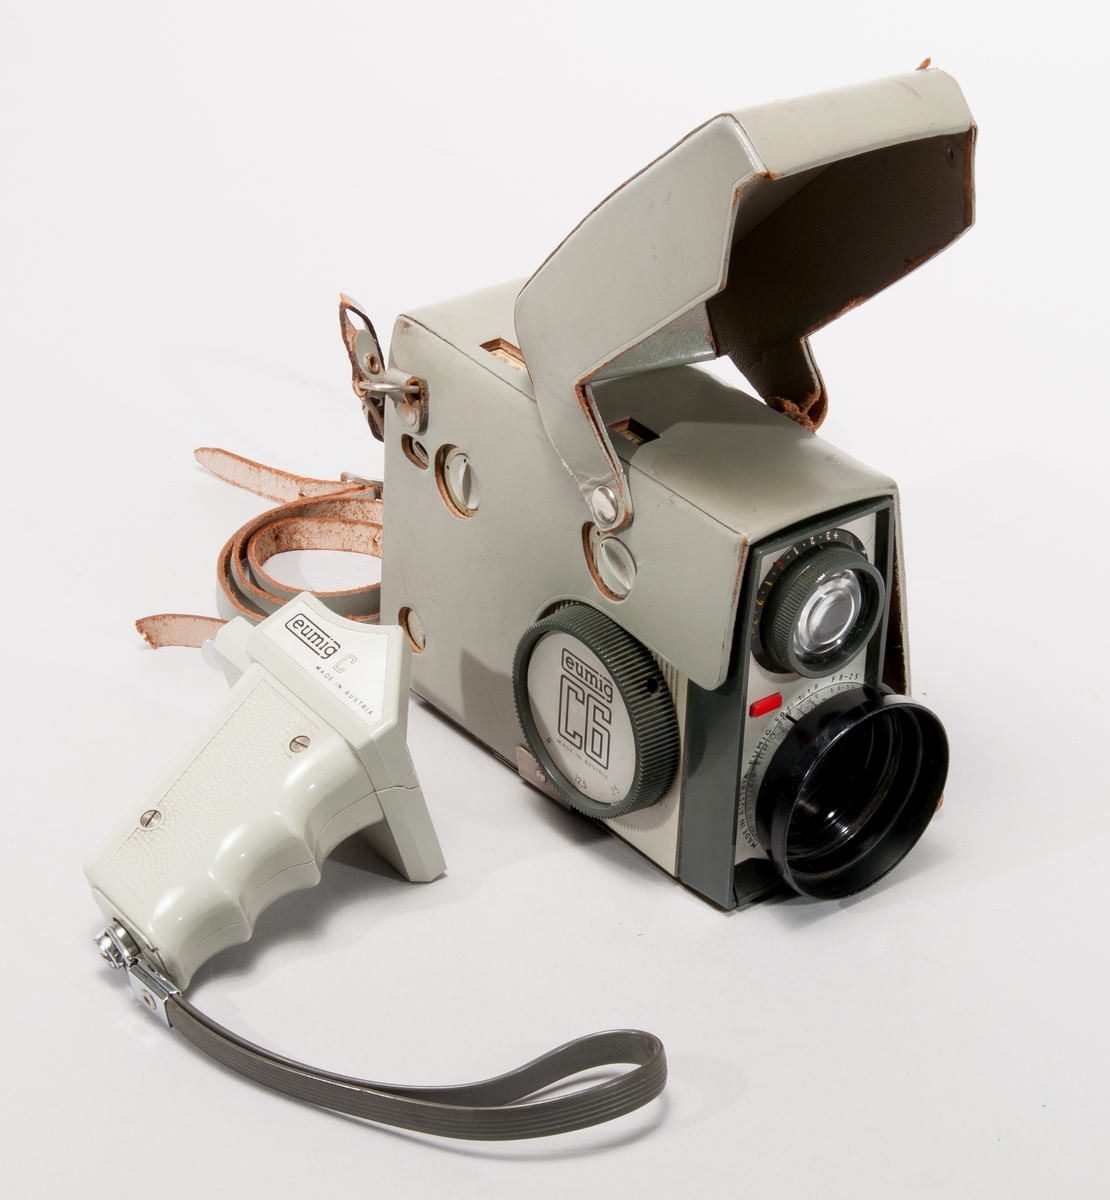 Filmkamera Eumig typ C6, med zoom mellan 6/12,5/25 mm, som kan motorstyras via tillhörande handgrepp Eumig C.
Objektiv Eumig 504, 1:1,8 F=8-25

Med grönt läderhölje.